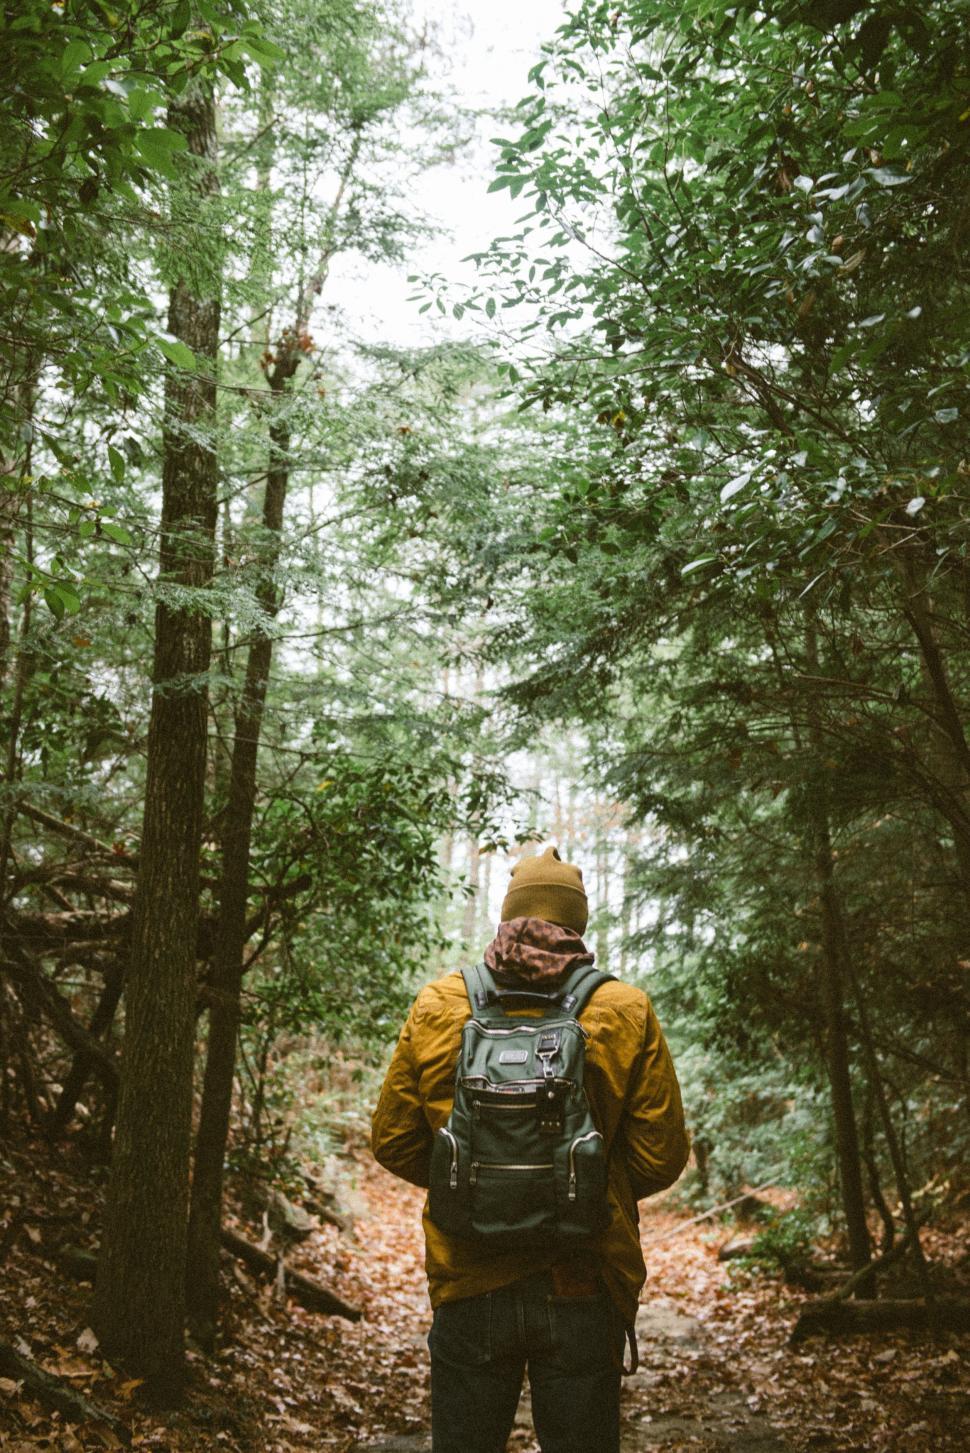 Free Image of Man Walking Through the Woods 